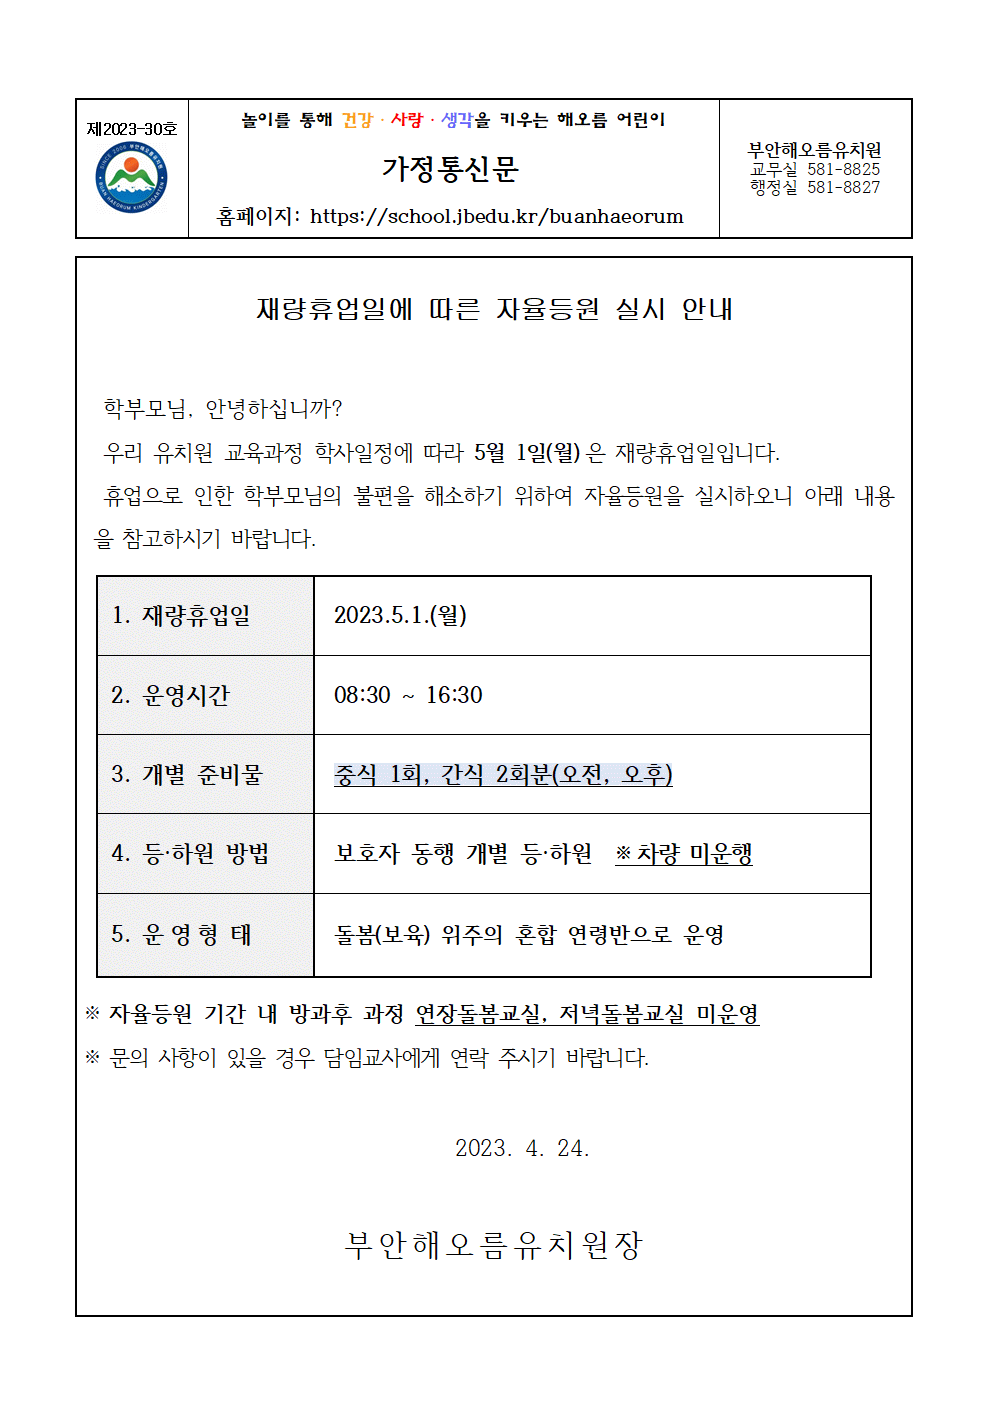 가정통신문30호(재량휴업일 자율등원 안내문(2023.5.1.))001